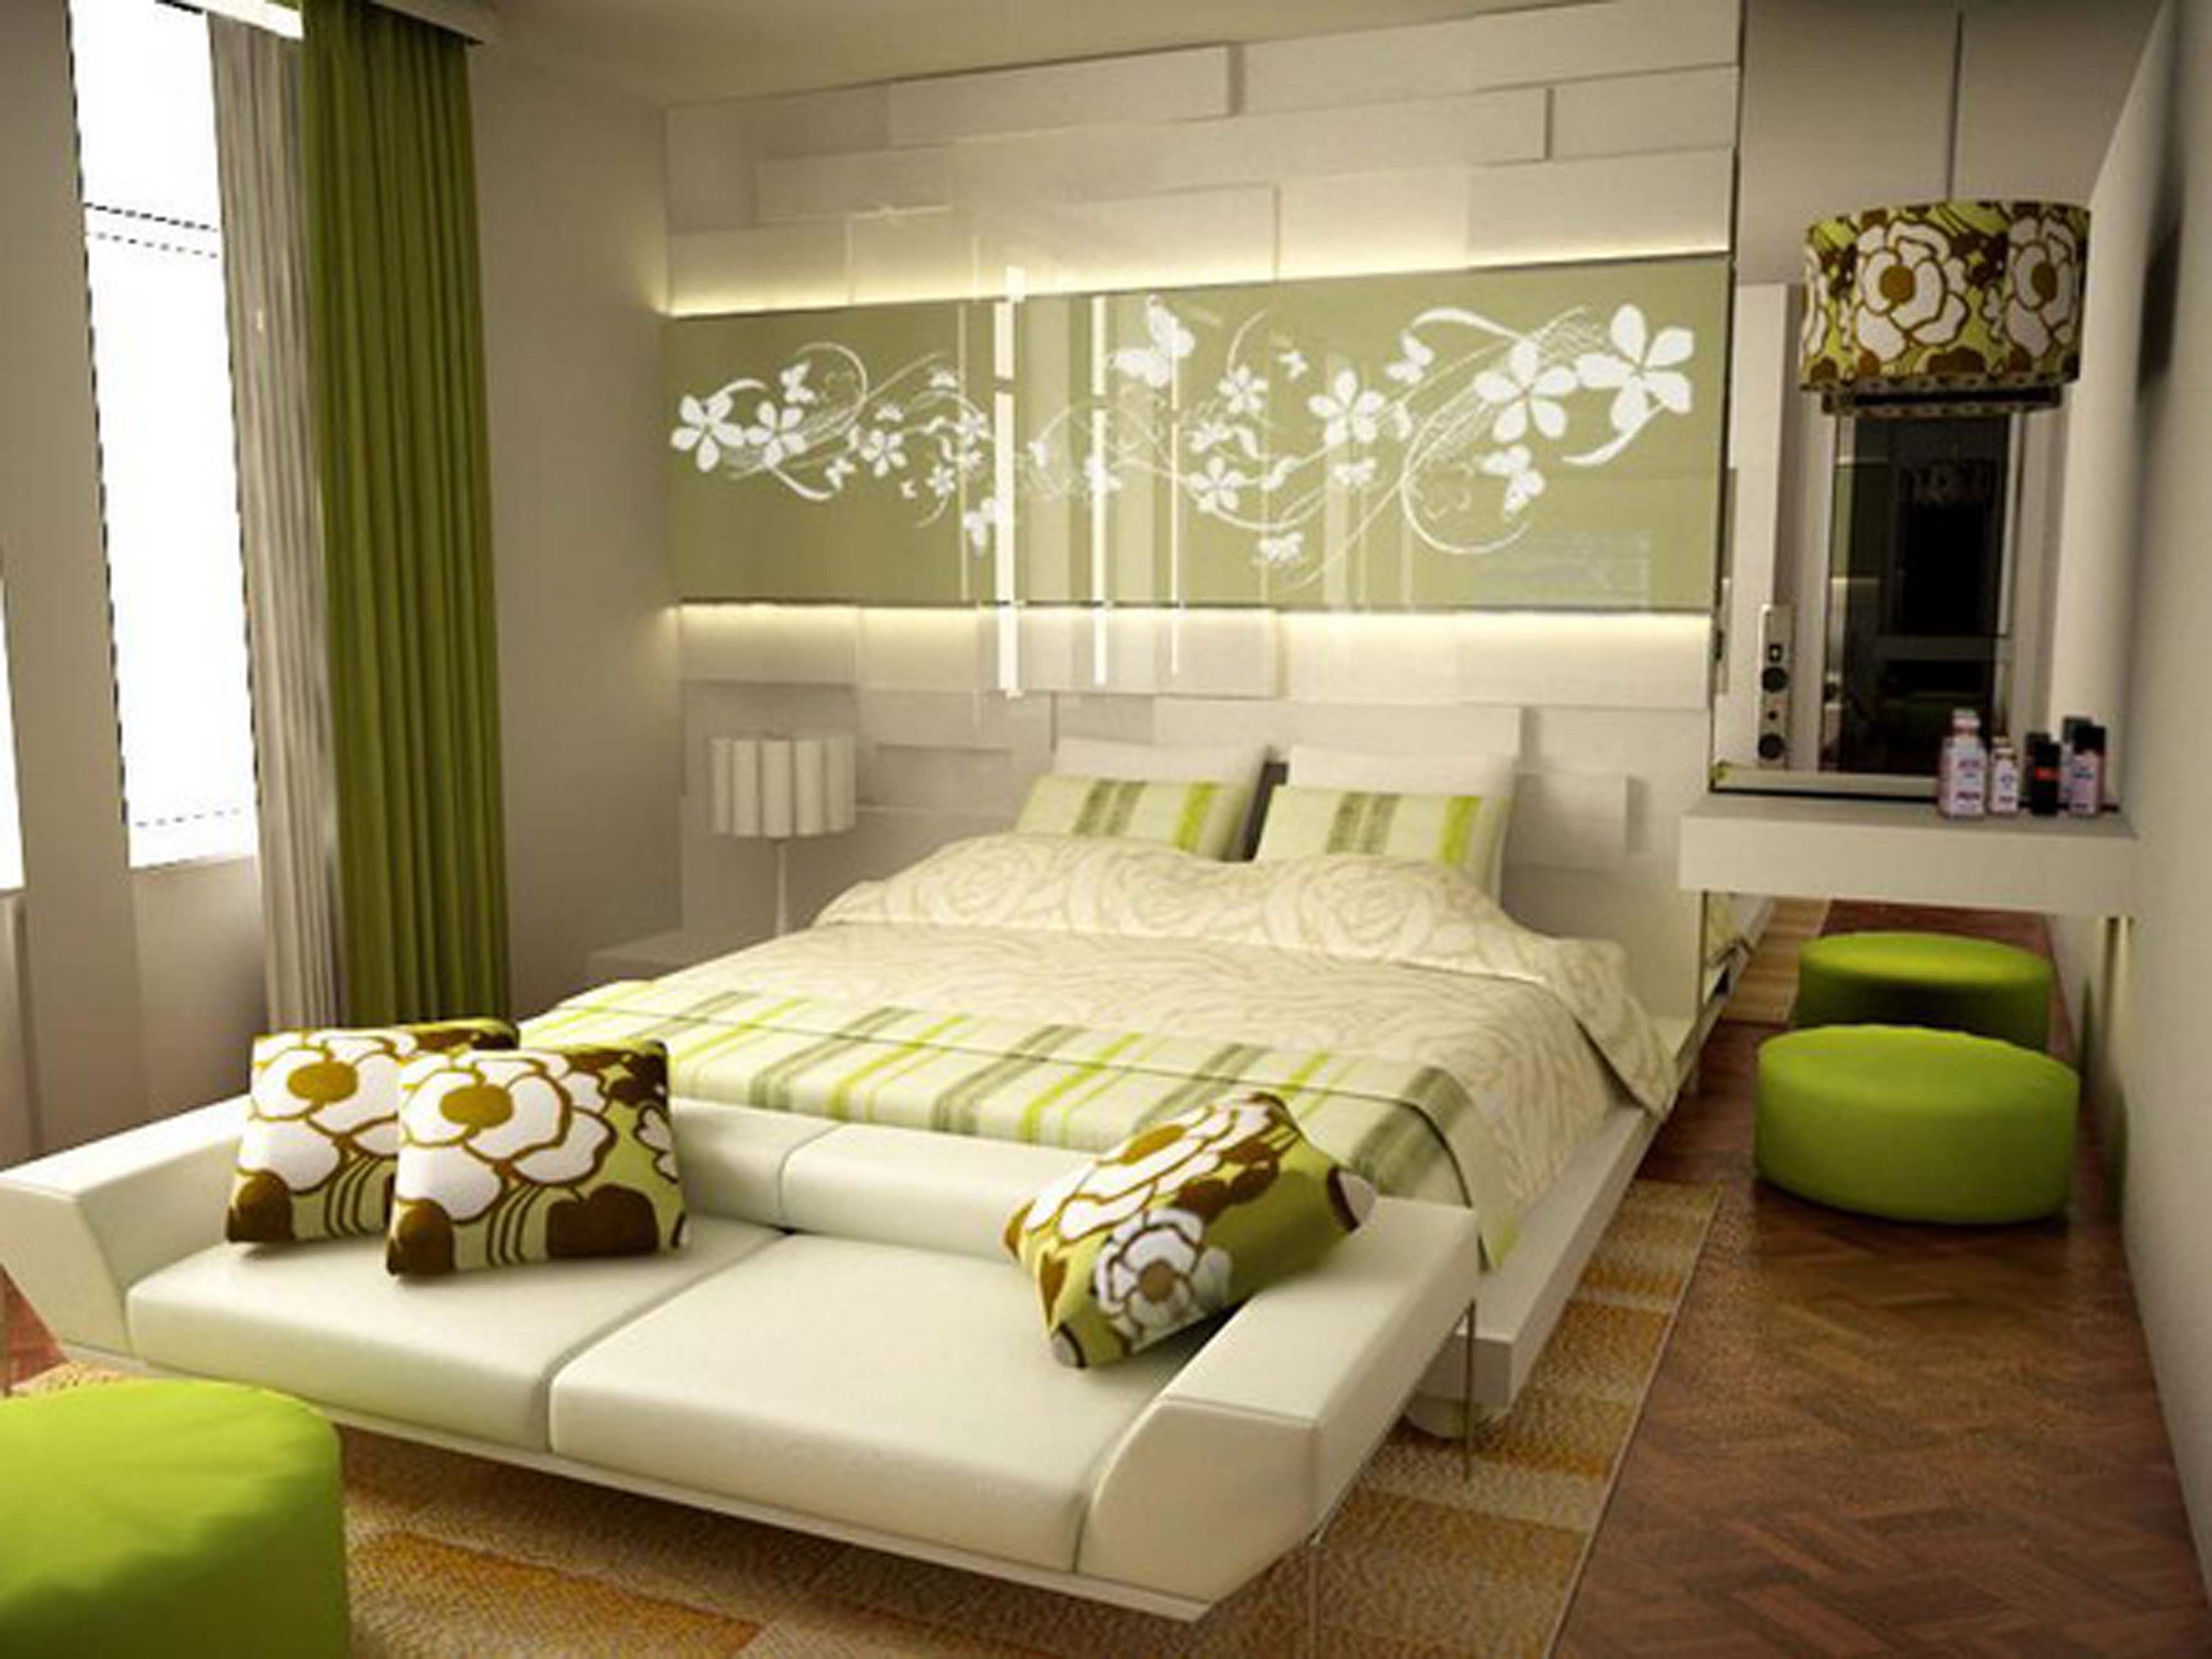 camera da letto 9 mq in verde